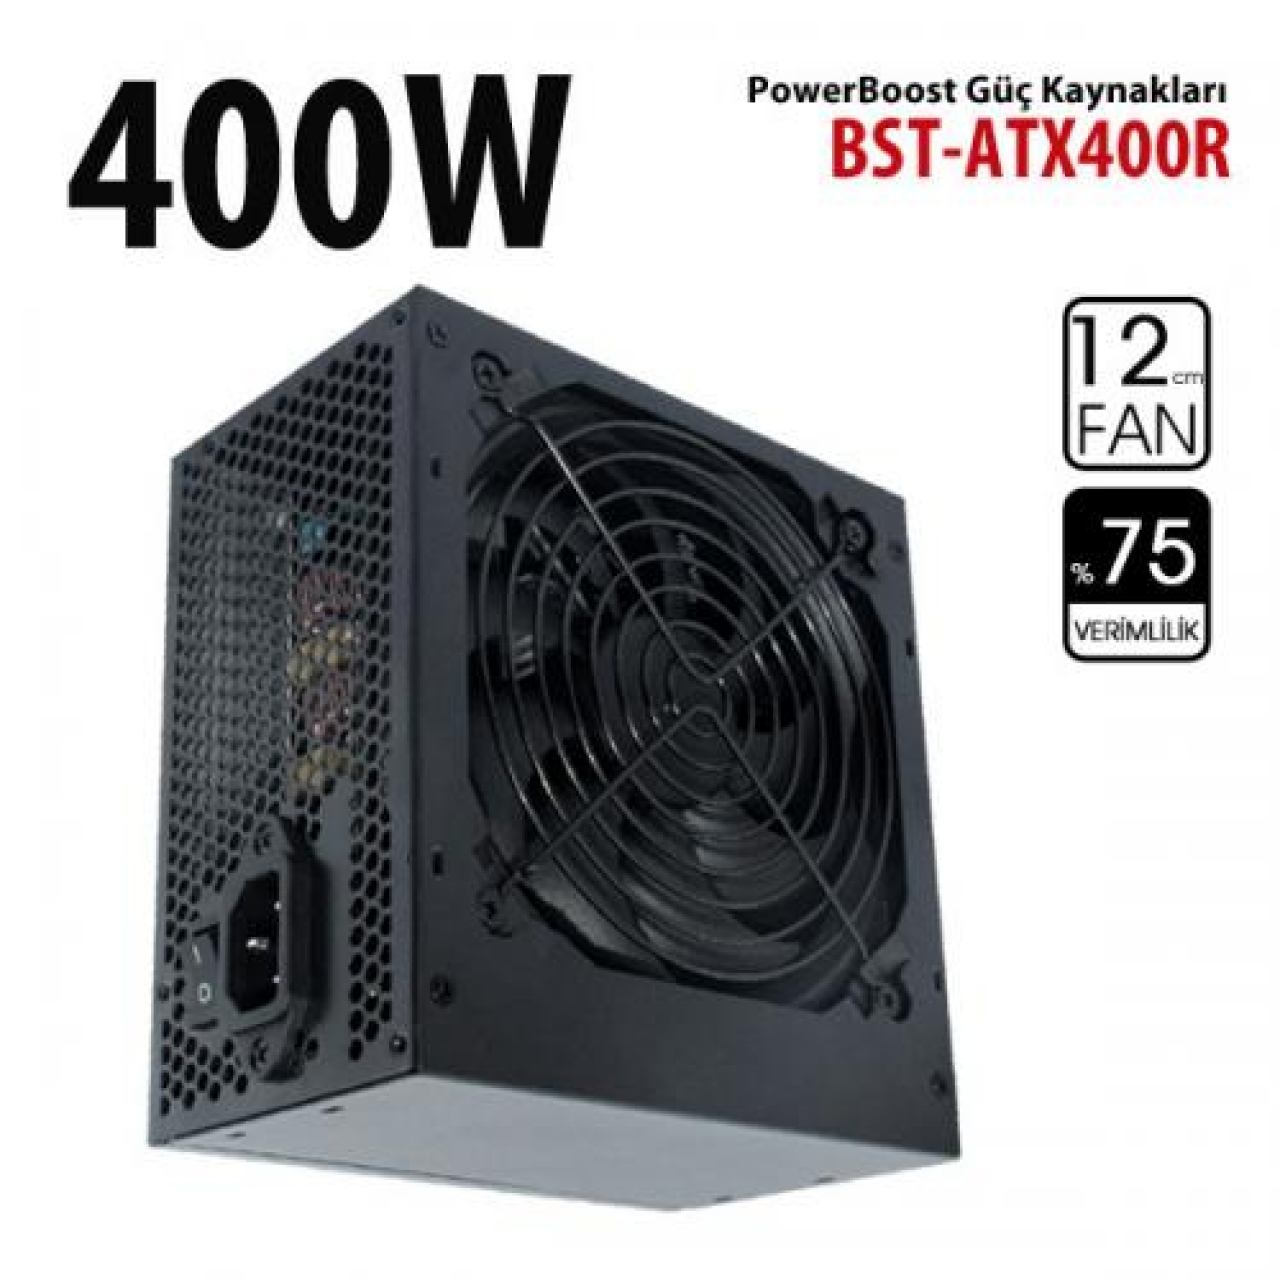 POWERBOOST 400W BST-ATX400R 12CM FANLI POWER SUPPLY